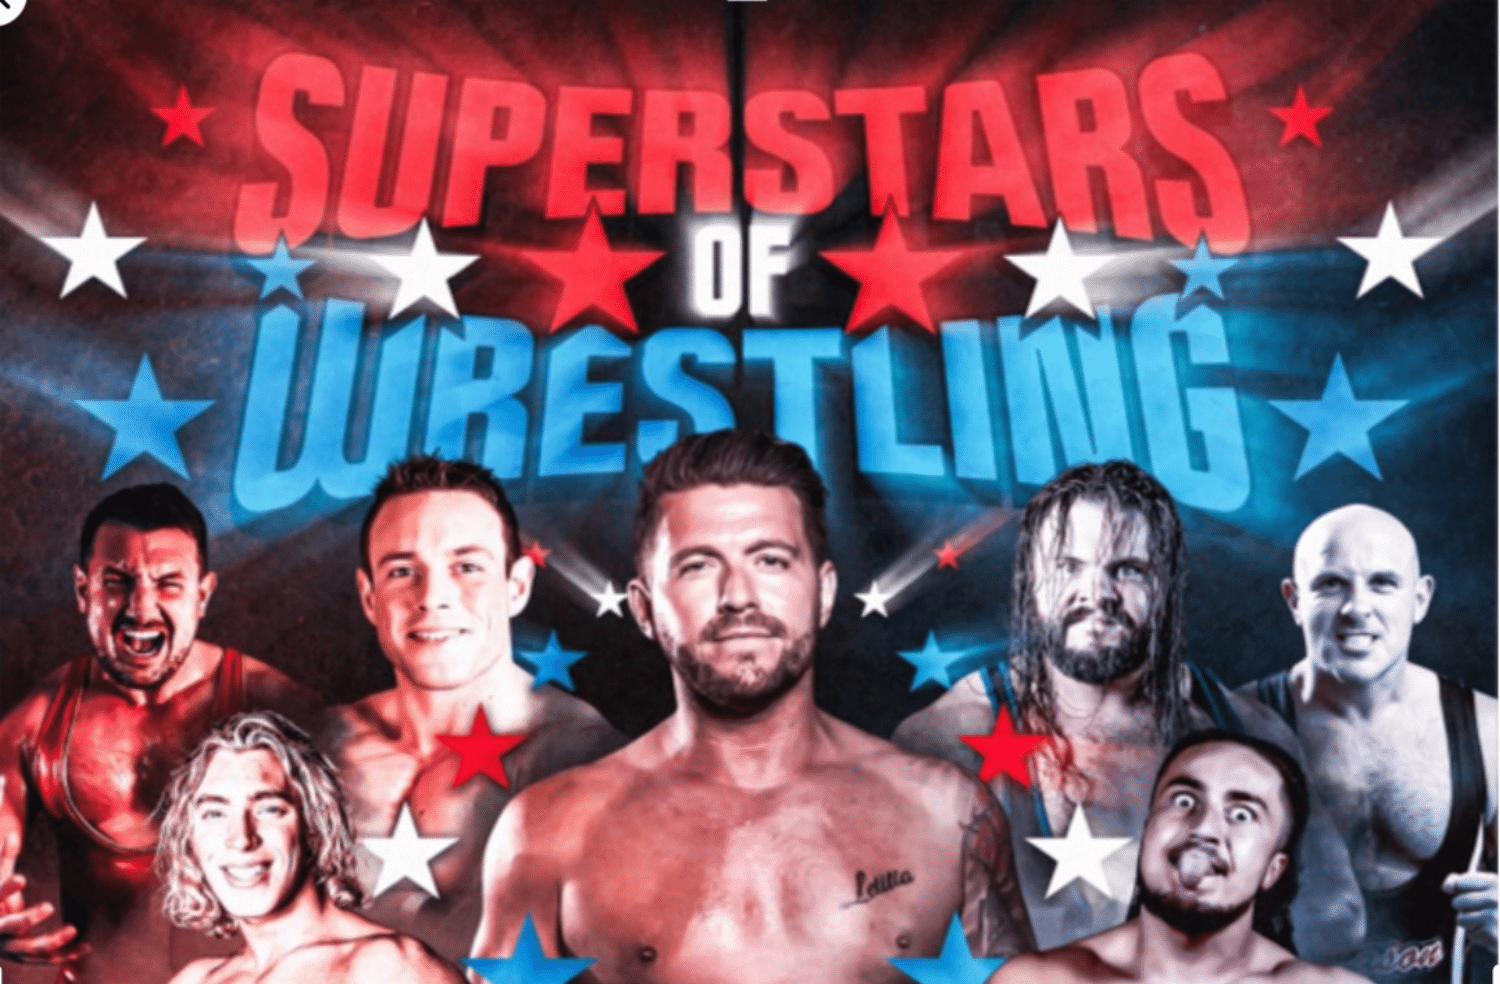 Superstars of Wrestling